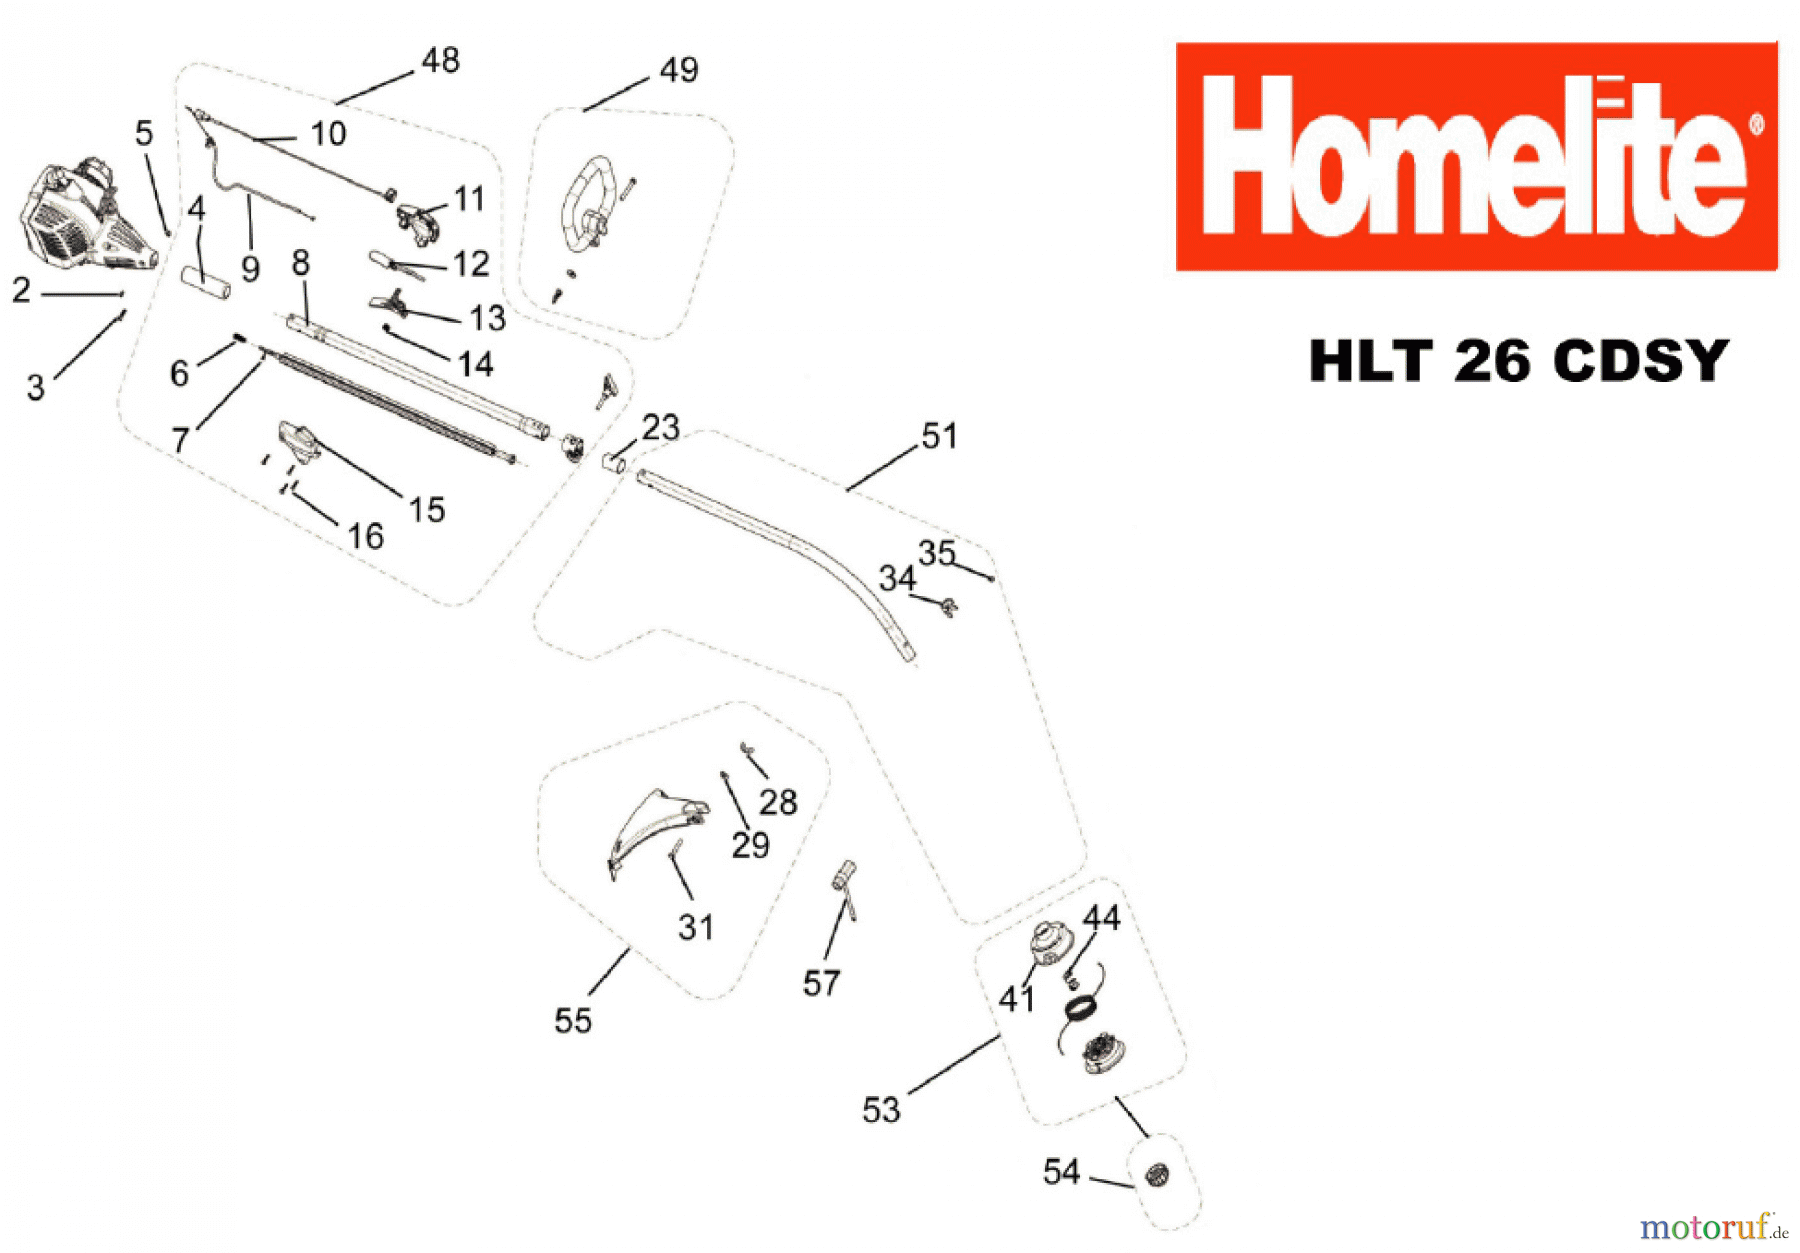  Homelite Trimmer Benzin HLT26CDSY Seite 1